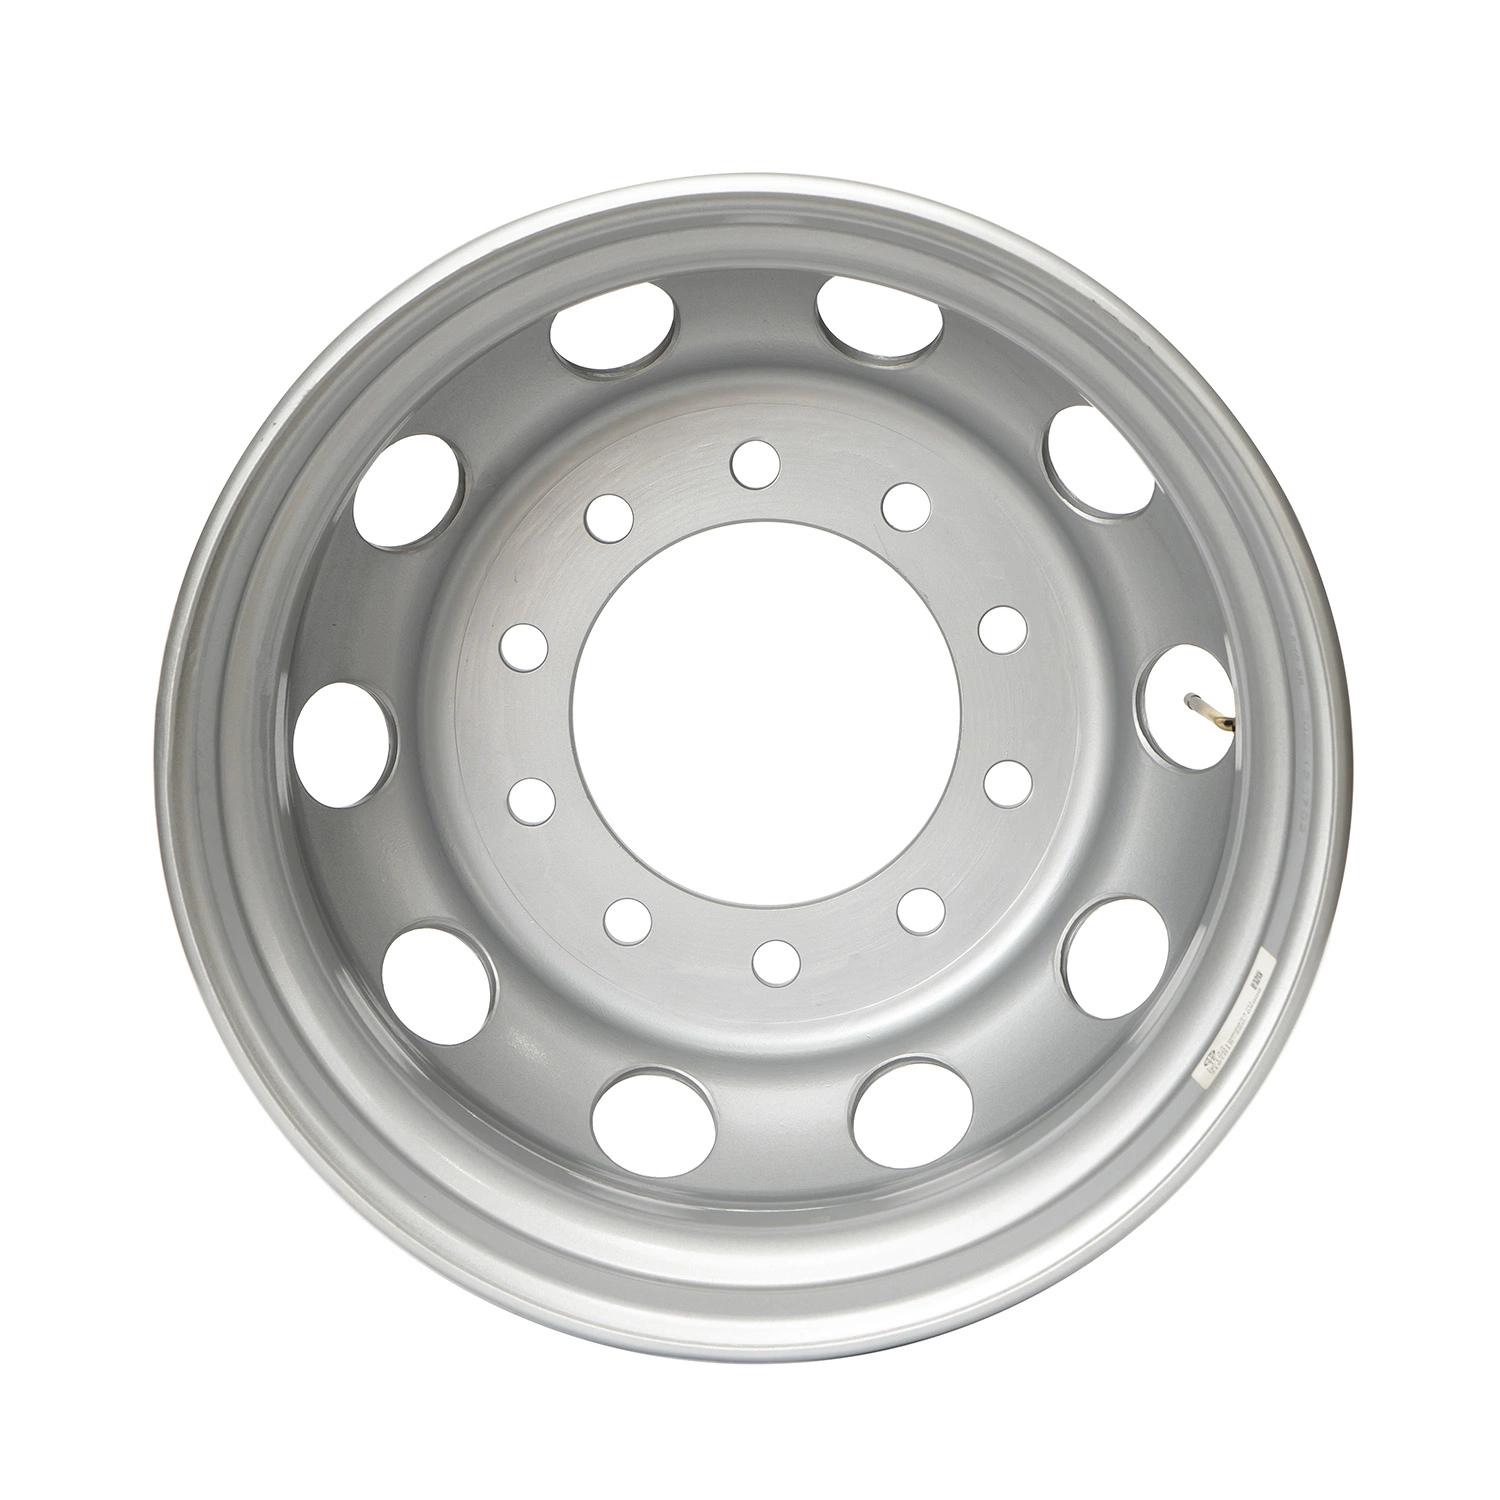 Steel Truck Wheel Rim of Truck Tire Wheel (8.0-20)